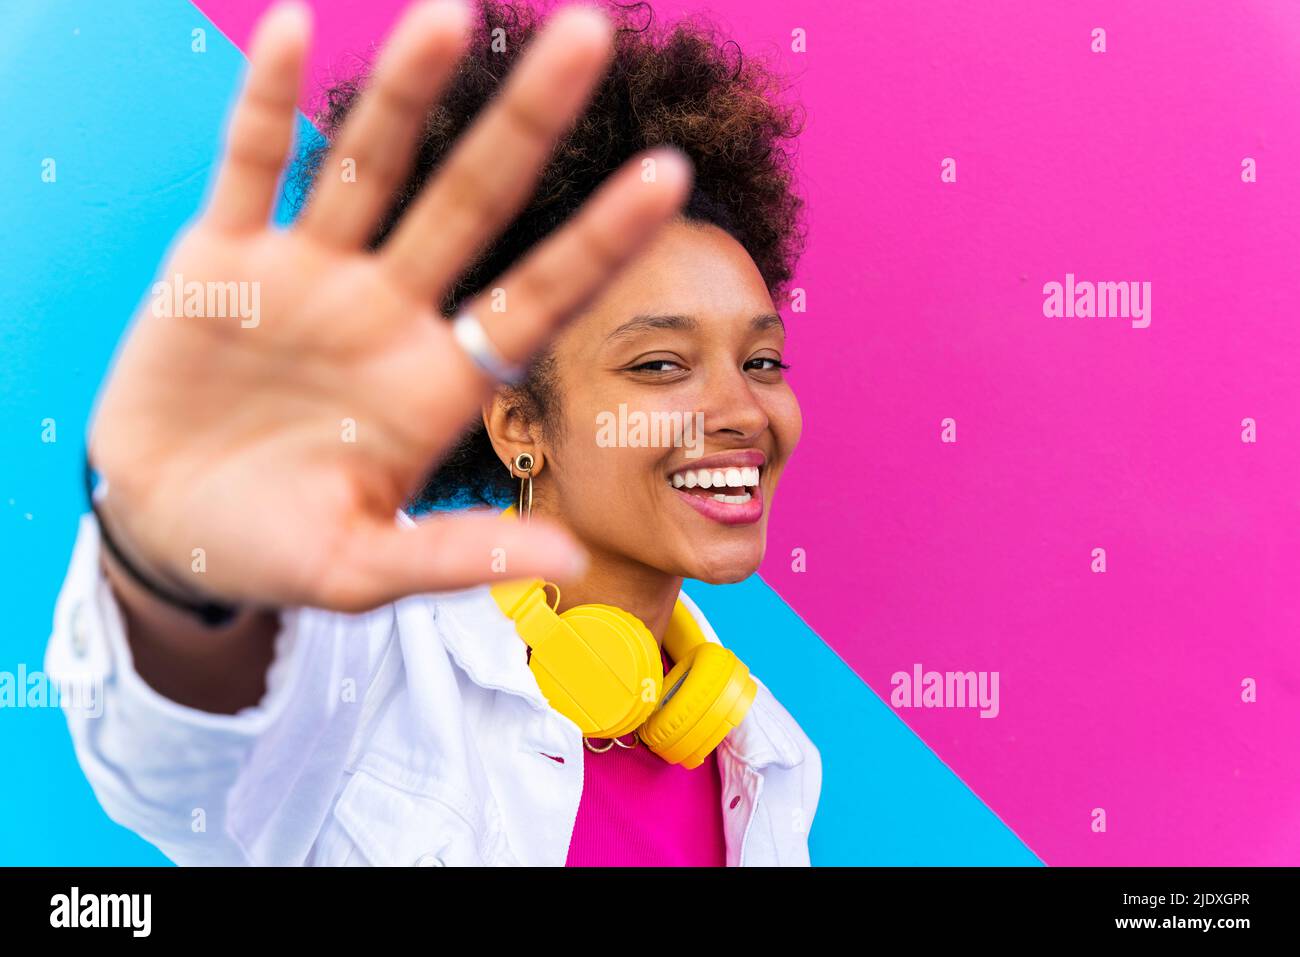 Fröhliche junge Frau mit kabellosen Kopfhörern, die das Stoppschild vor einer rosa und blauen Wand staufelt Stockfoto